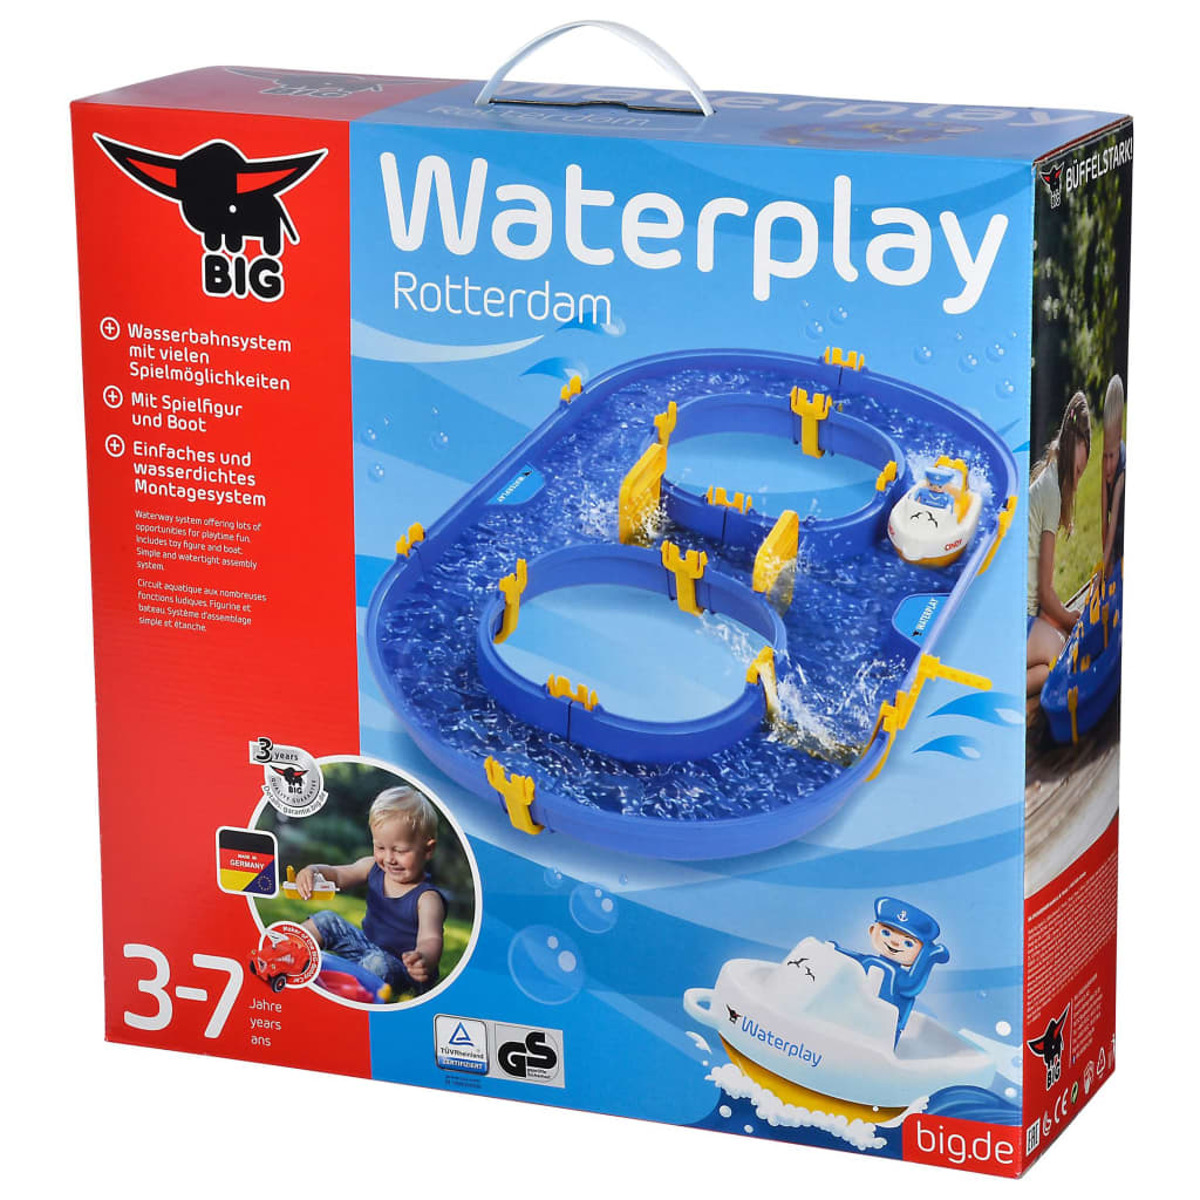 Waterplay Rotterdam 436528 BIG